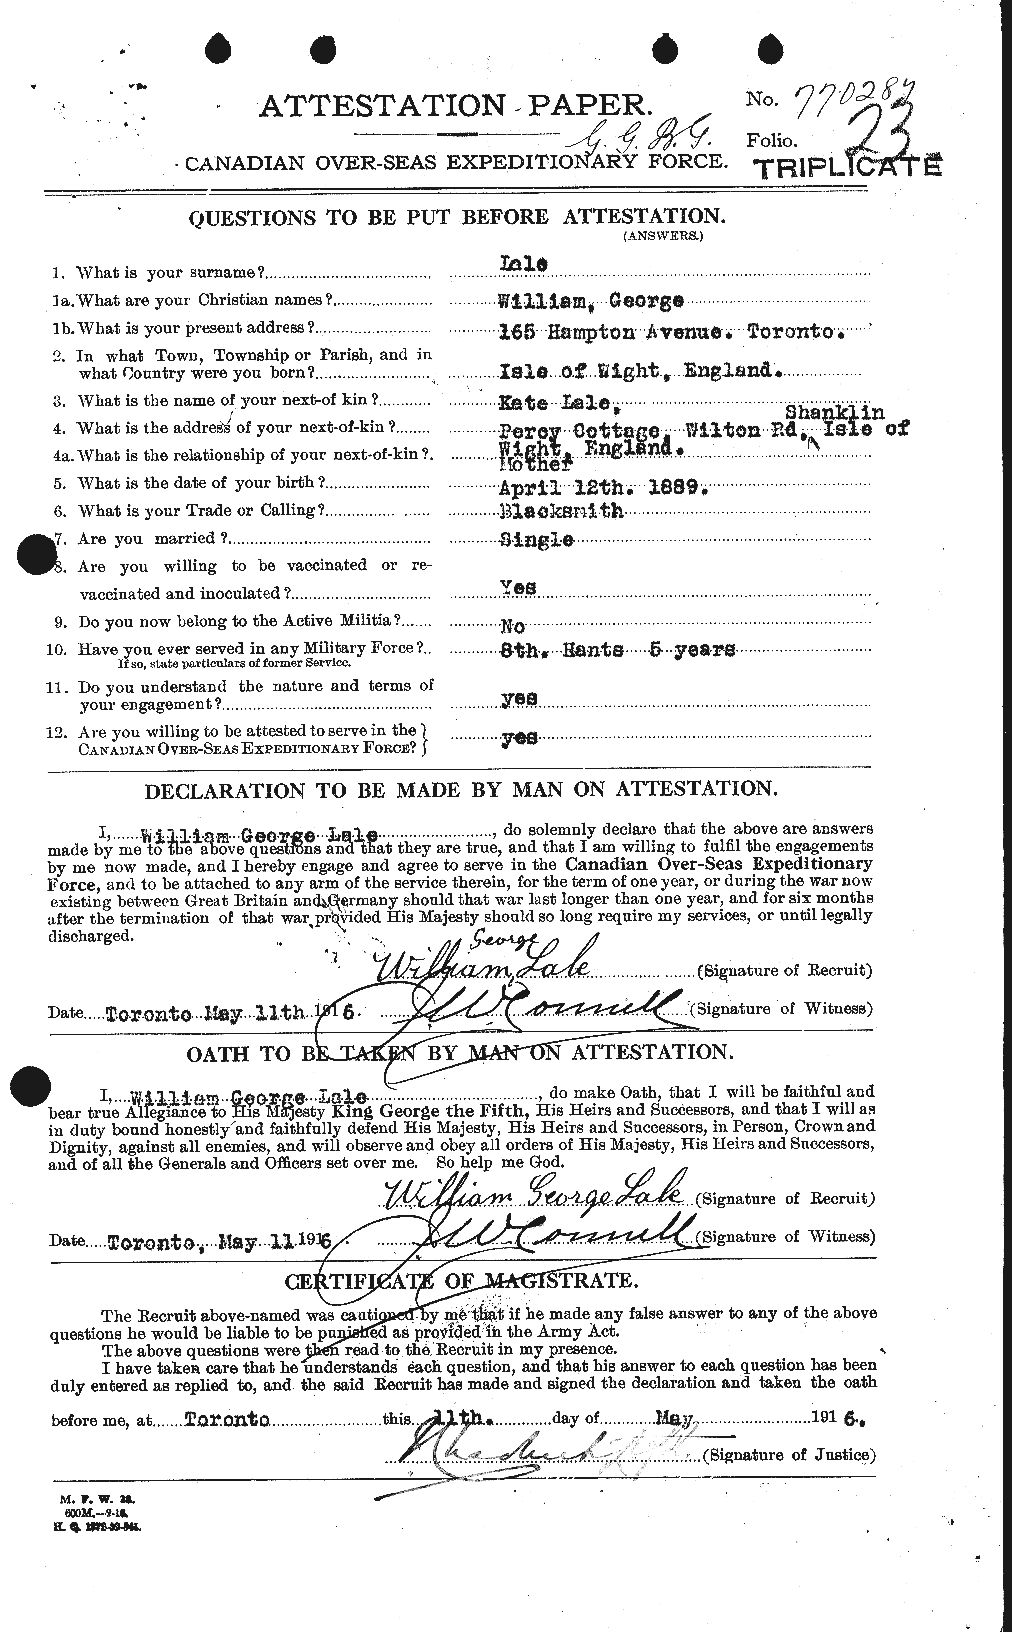 Dossiers du Personnel de la Première Guerre mondiale - CEC 443356a